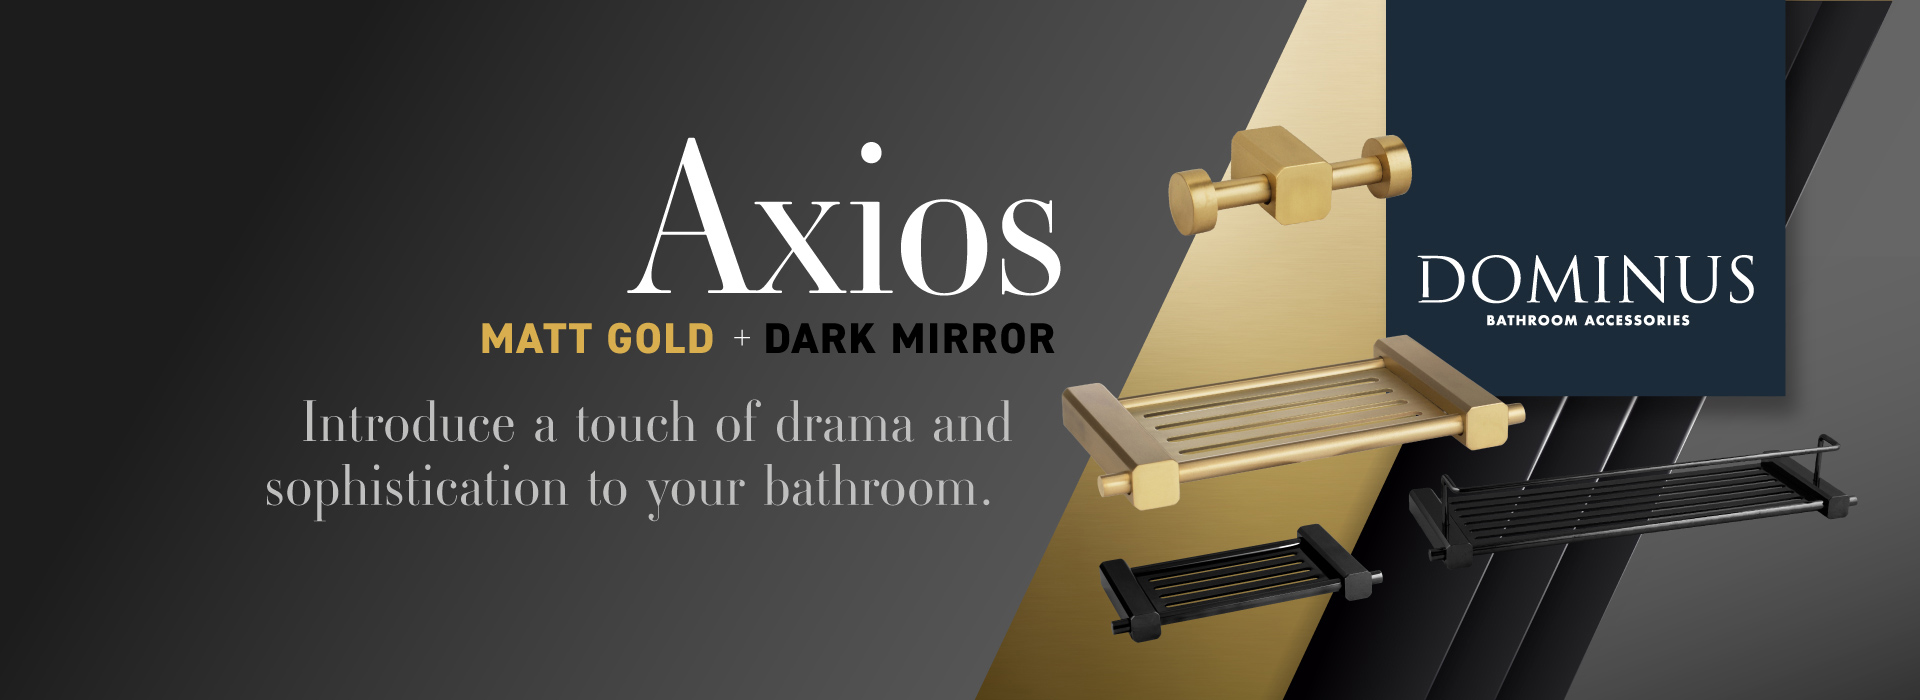 Axios Bathroom Accessory Collection